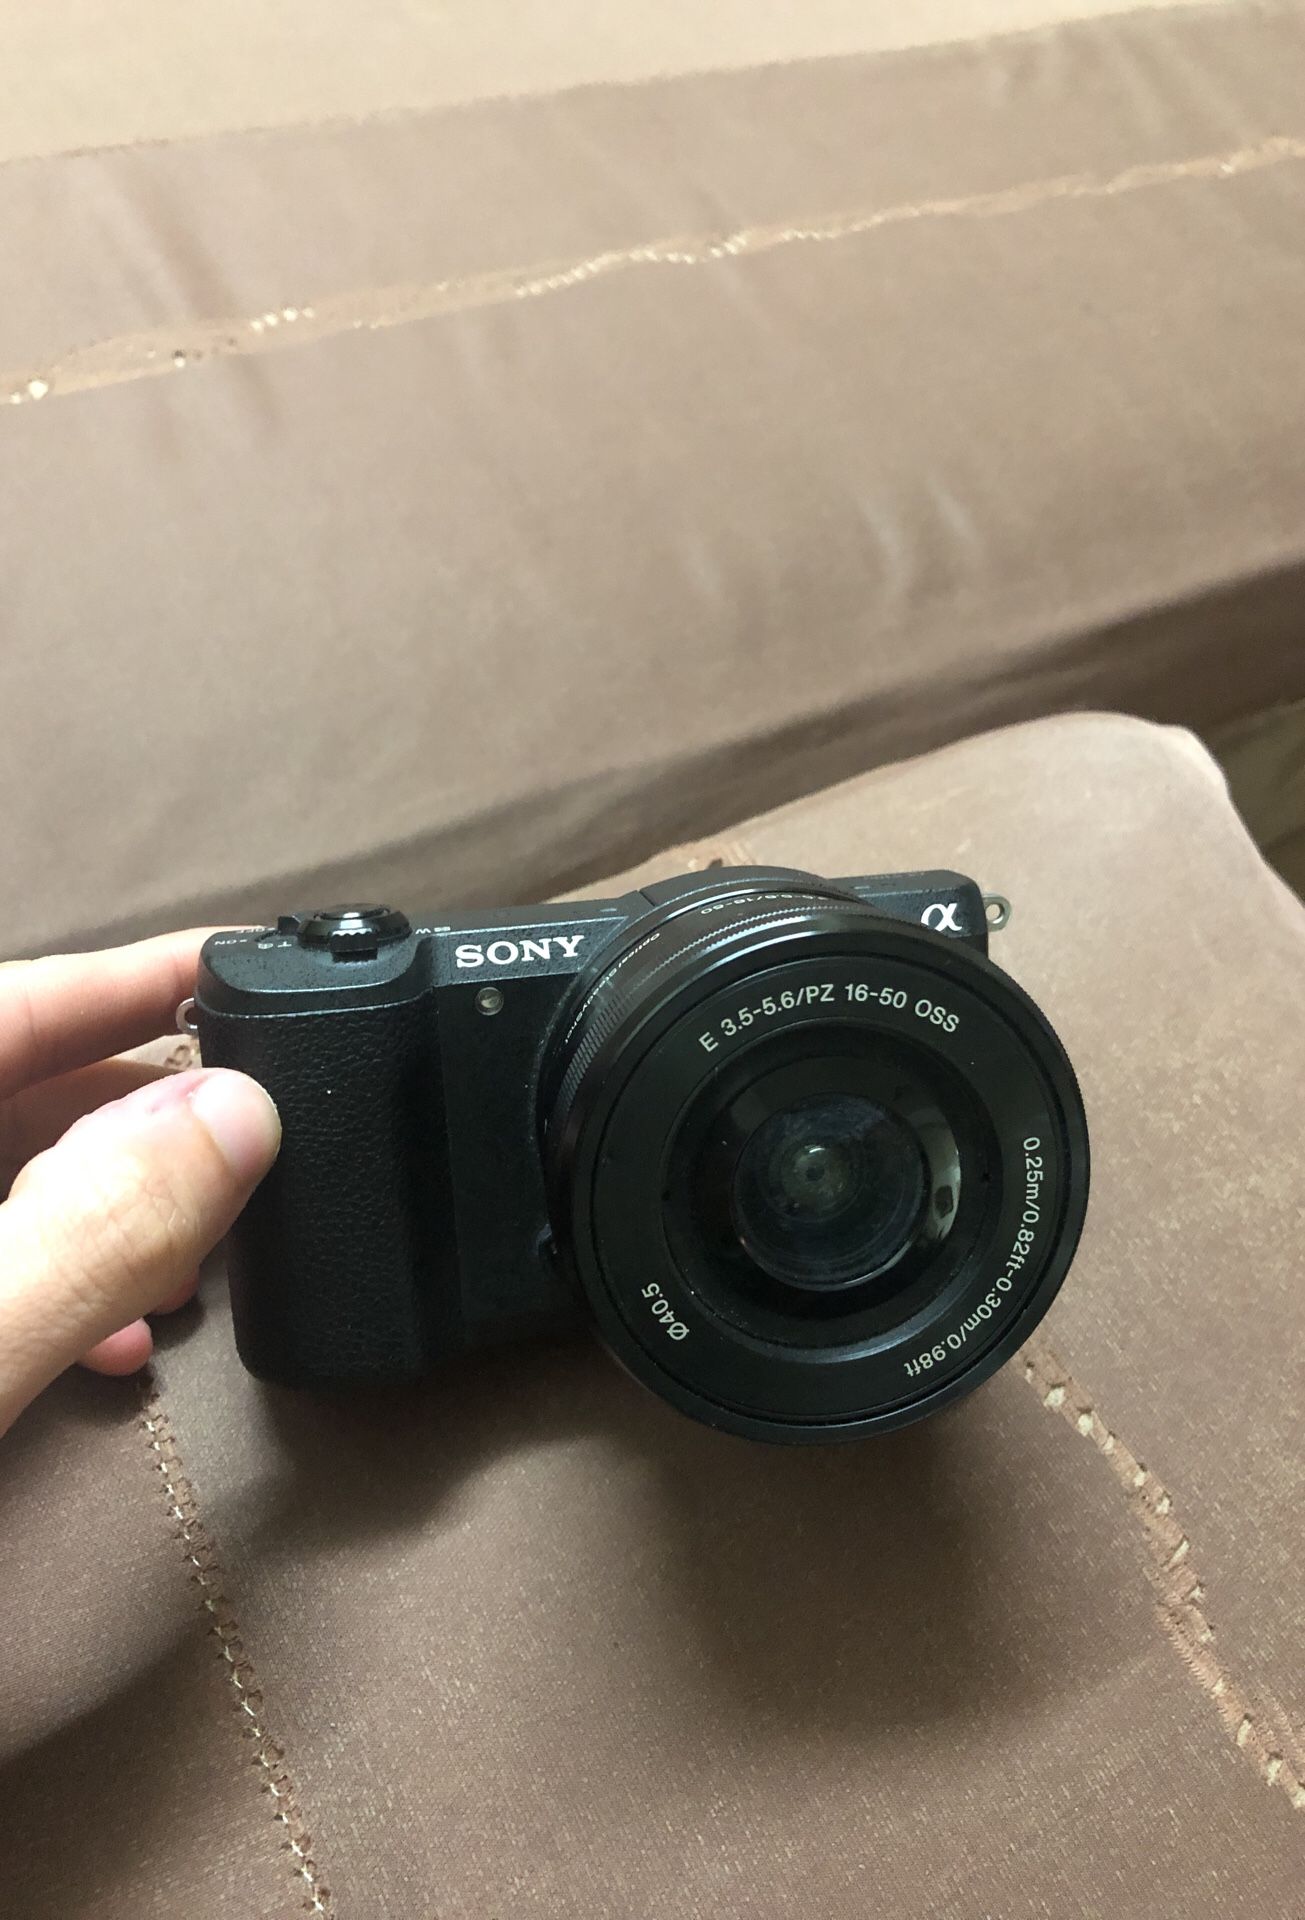 Sony A5100 camera